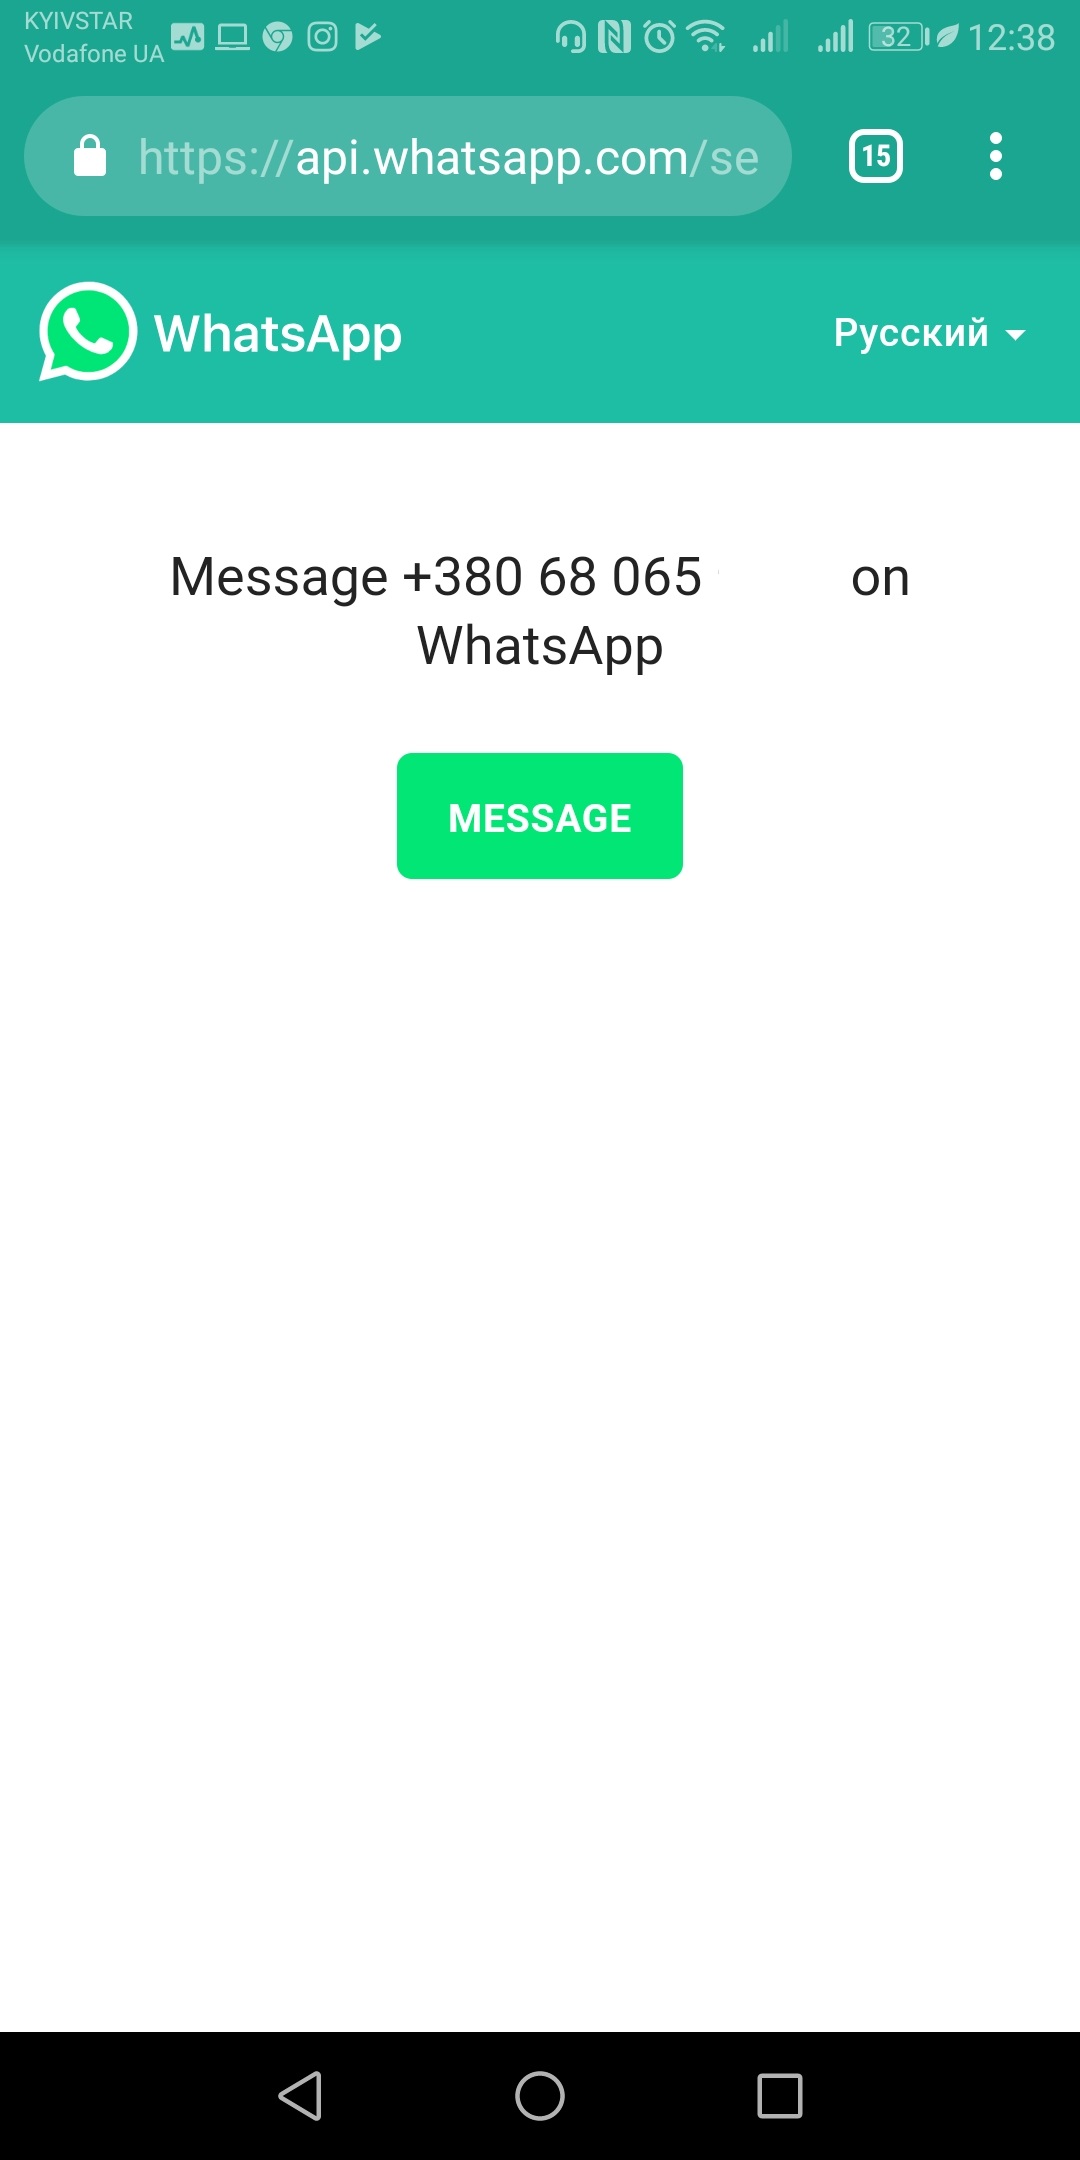 3_Hướng dẫn cách gửi tin nhắn WhatsApp đến số không có trong danh bạ